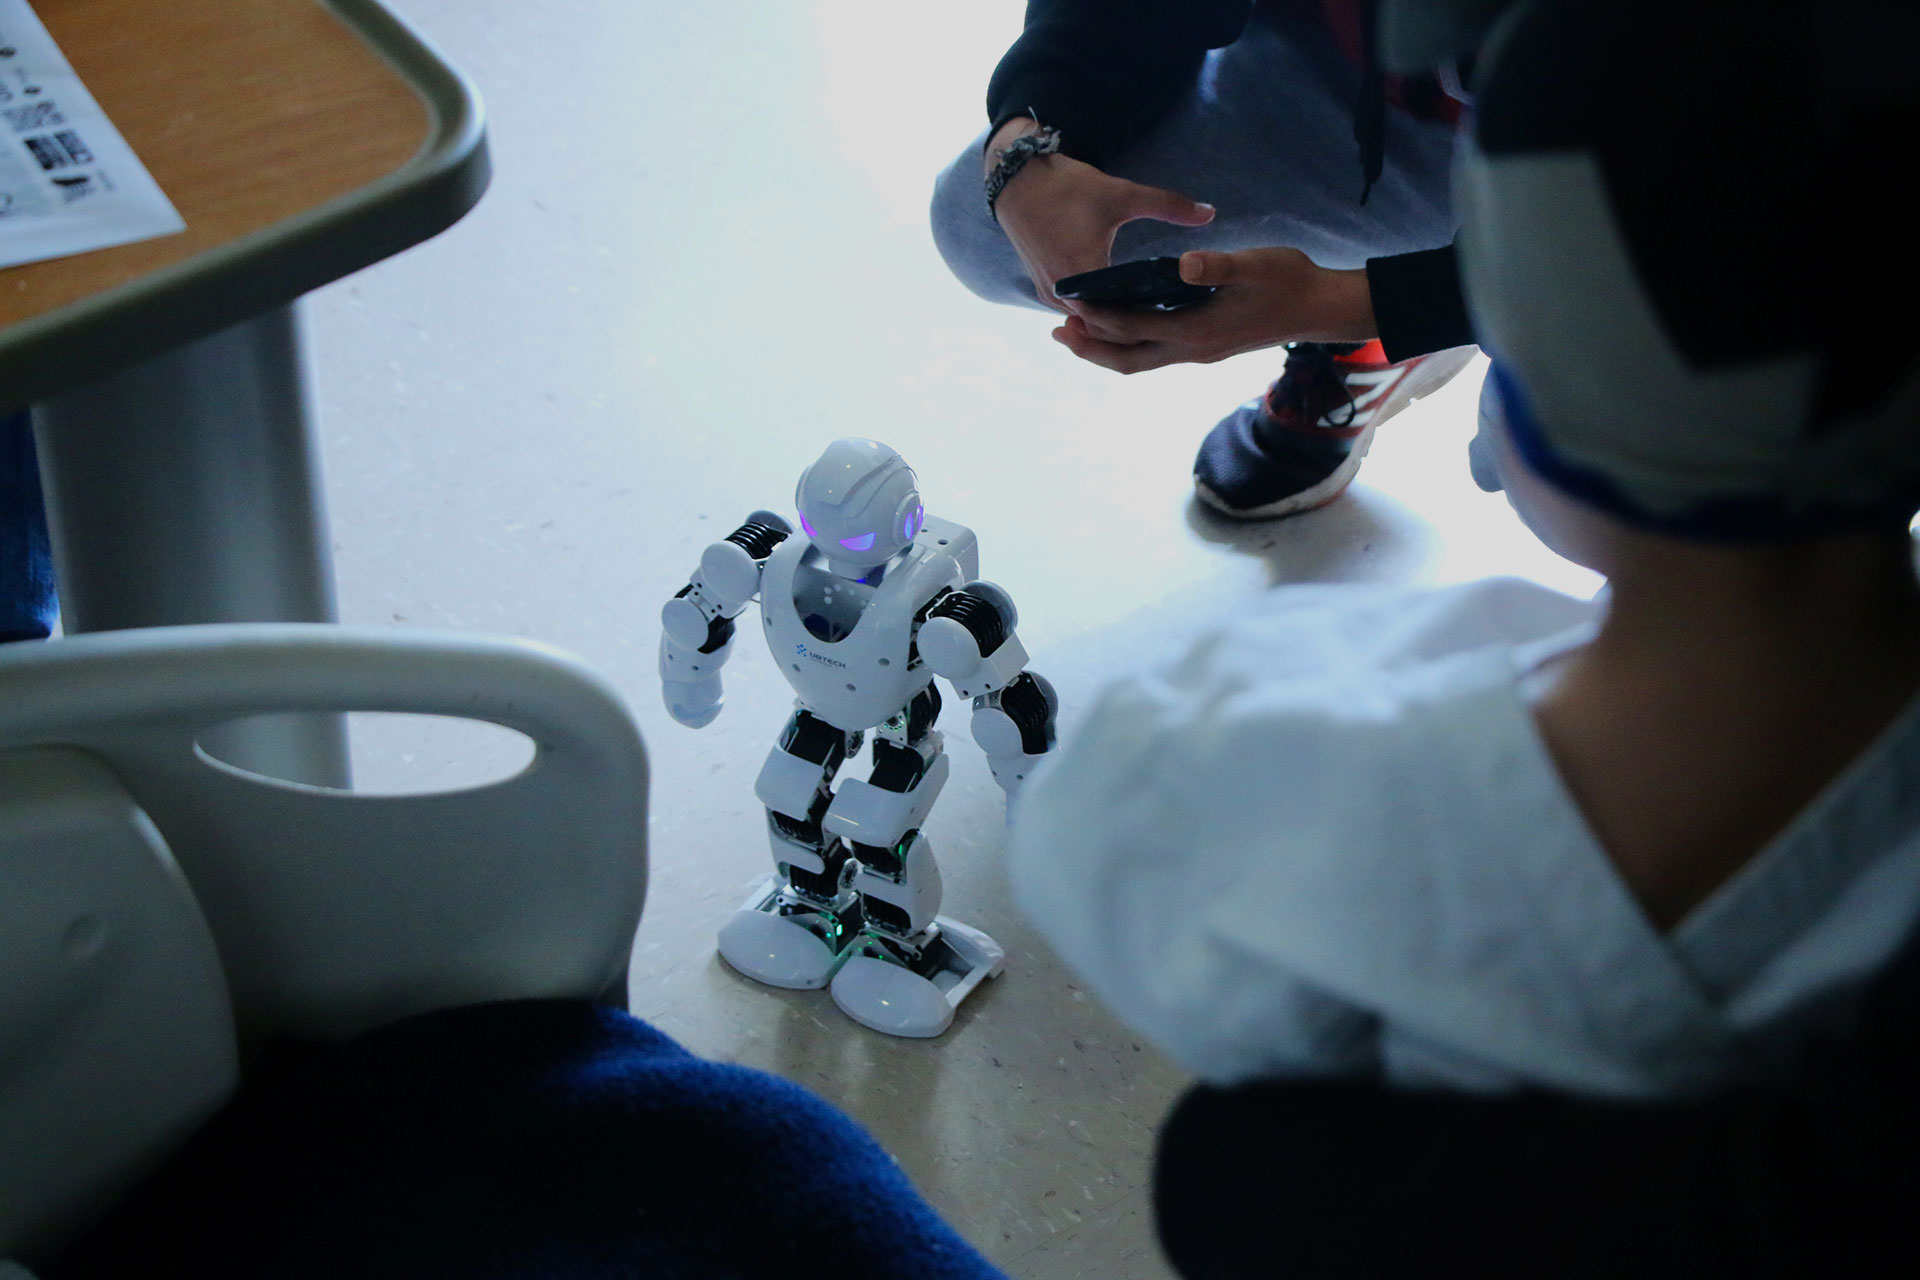 Se hace muestra del robot alpha, a uno de los infantes que estaban en la habitación